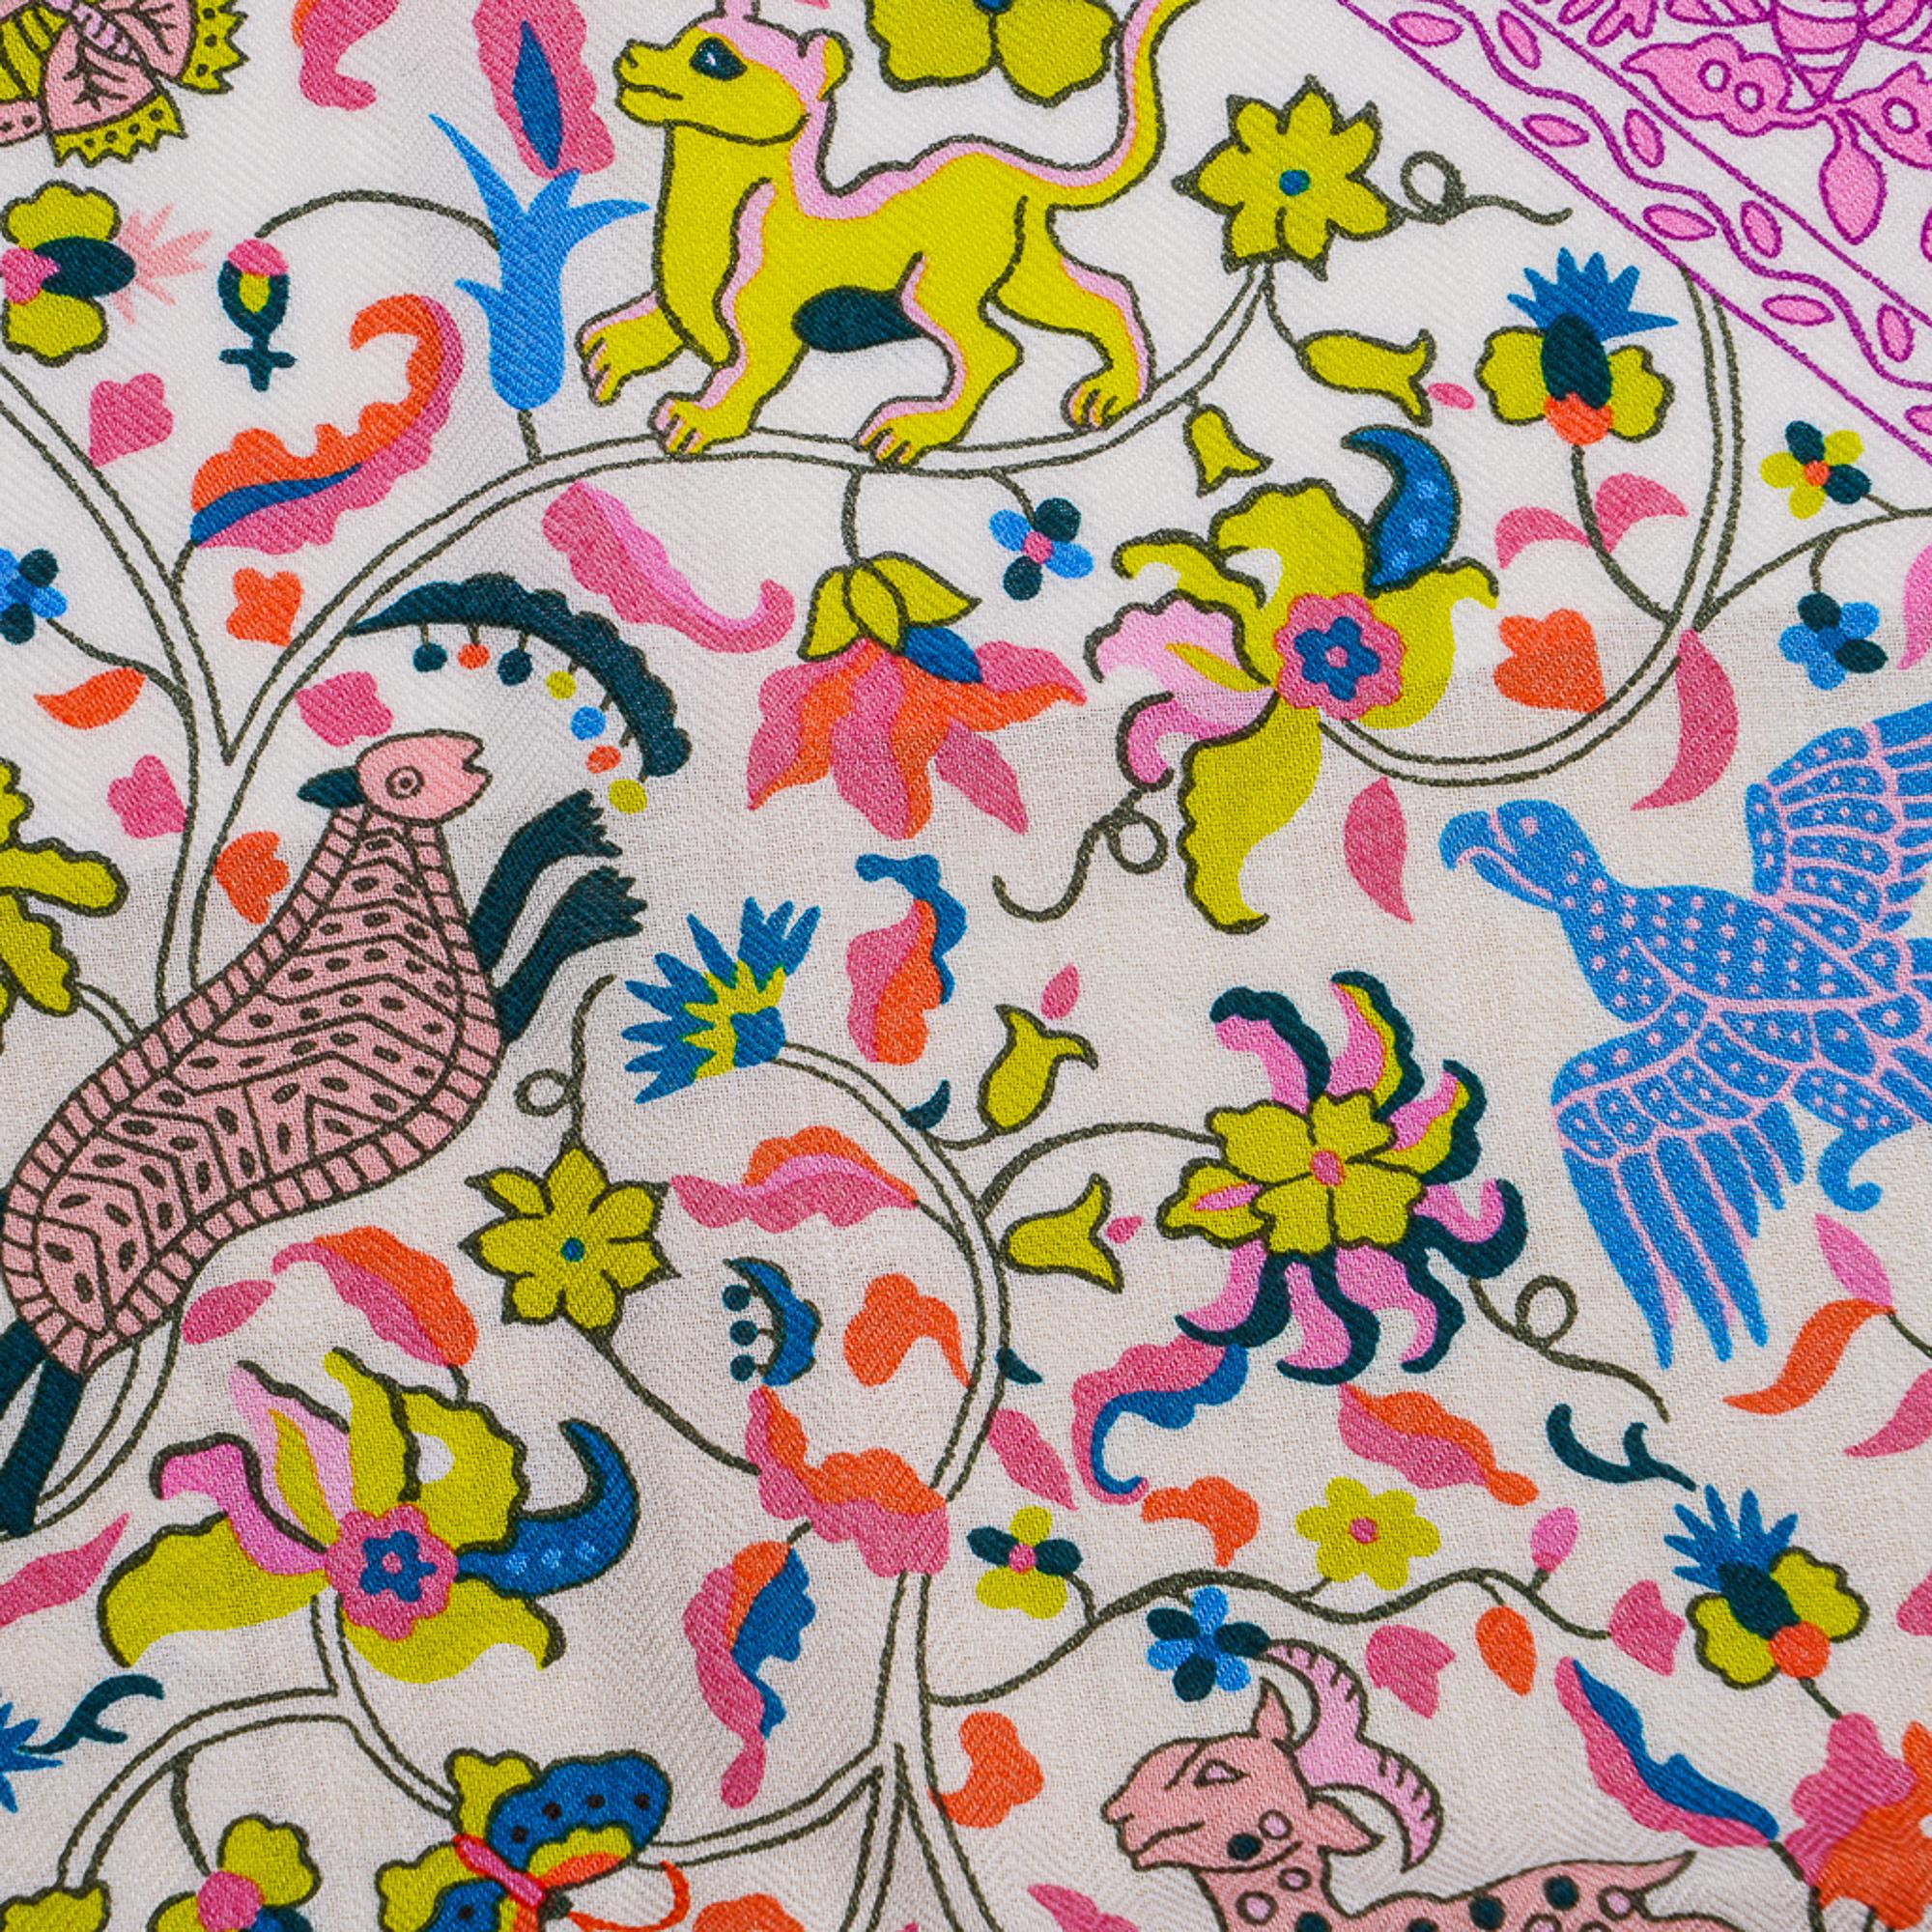 Mightychic offre un  garantie authentique Hermès Cachemire Soie Châle GM 140 cm Parures de Samouraïs.
Cette composition exquise conçue par Aline Honore présente une armure et des motifs floraux.
Des tons vifs en vert, corail, et rose indien.
Les